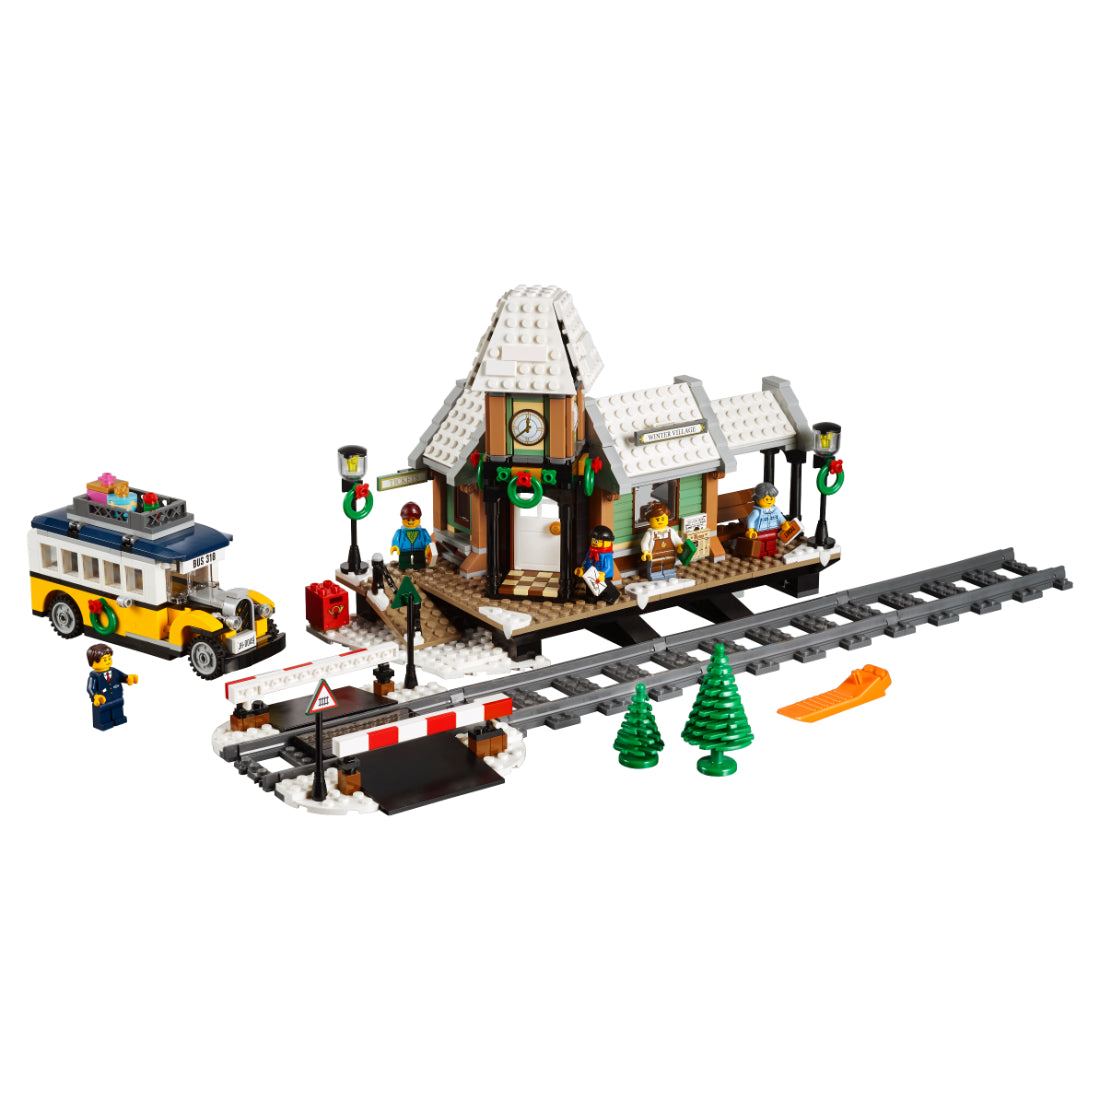 LEGO® Creator Expert Estación navideña (10259)